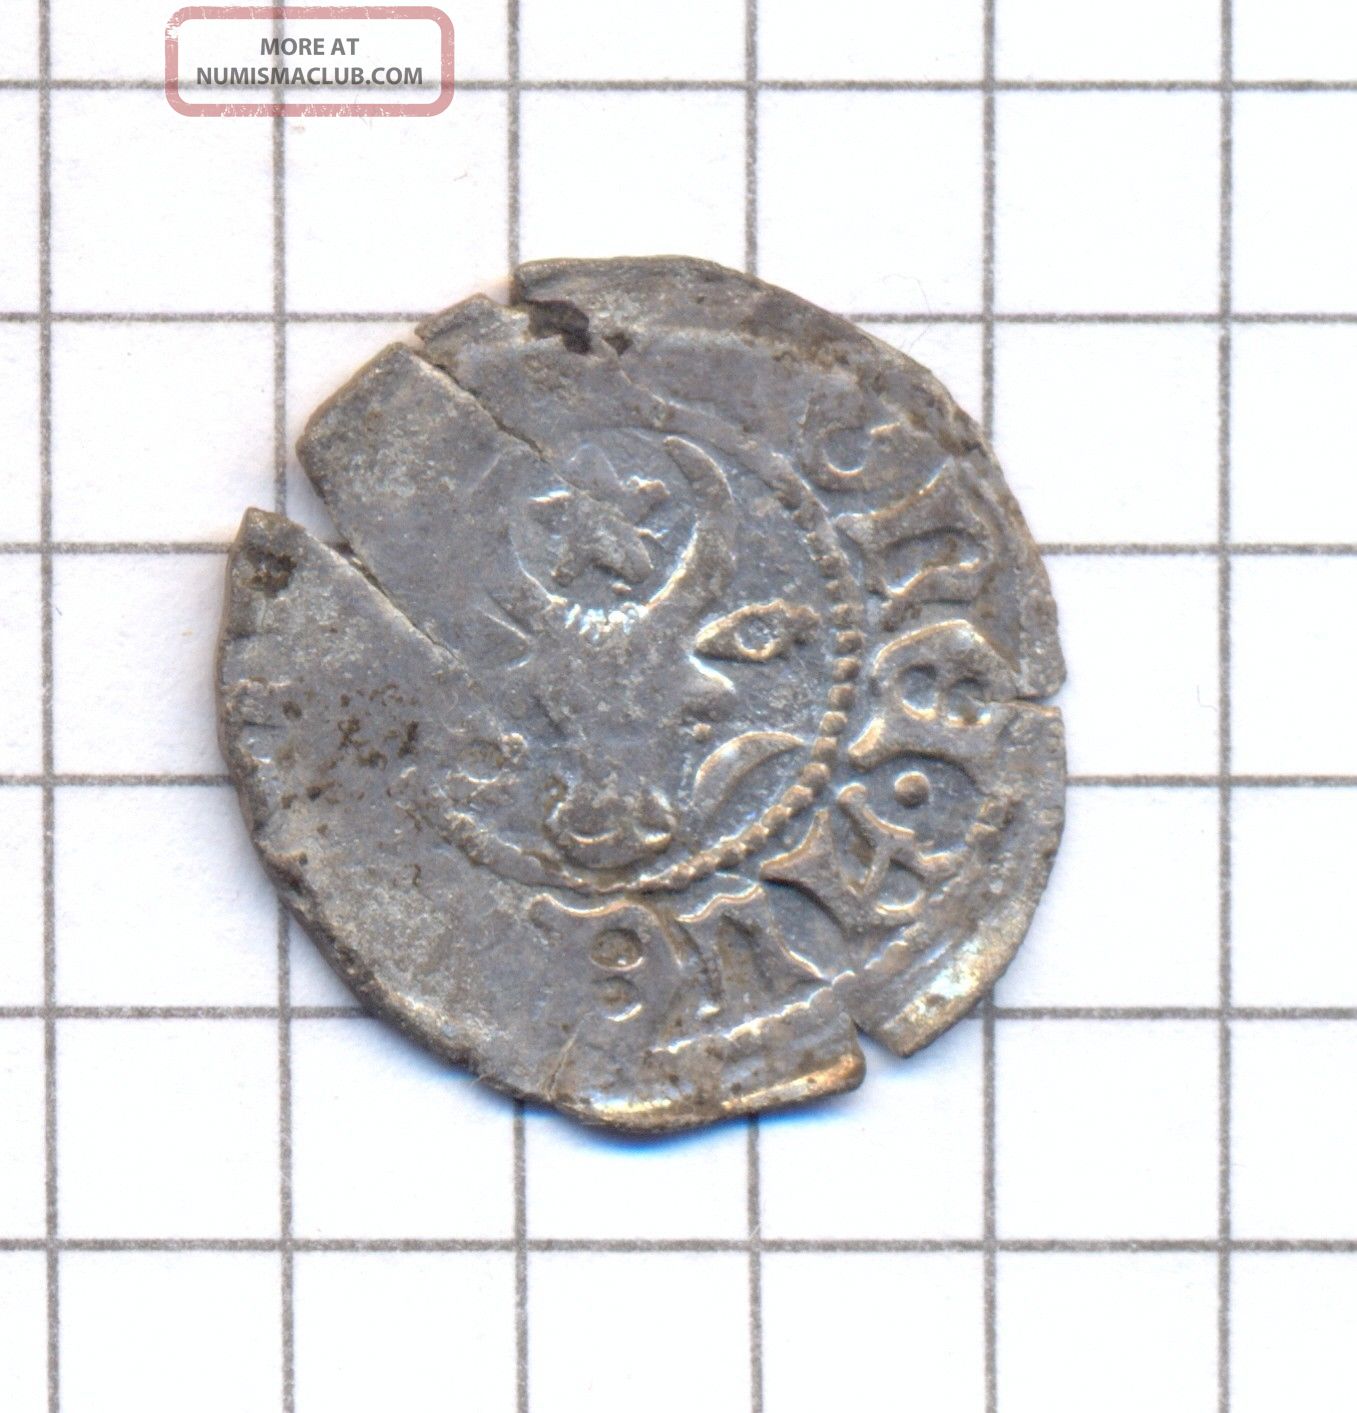 Moldova Moldavia Silver Groat Grosz Groschen Coin Alexandru Cel Bun 1400 - 1432 [2 Coins: Medieval photo